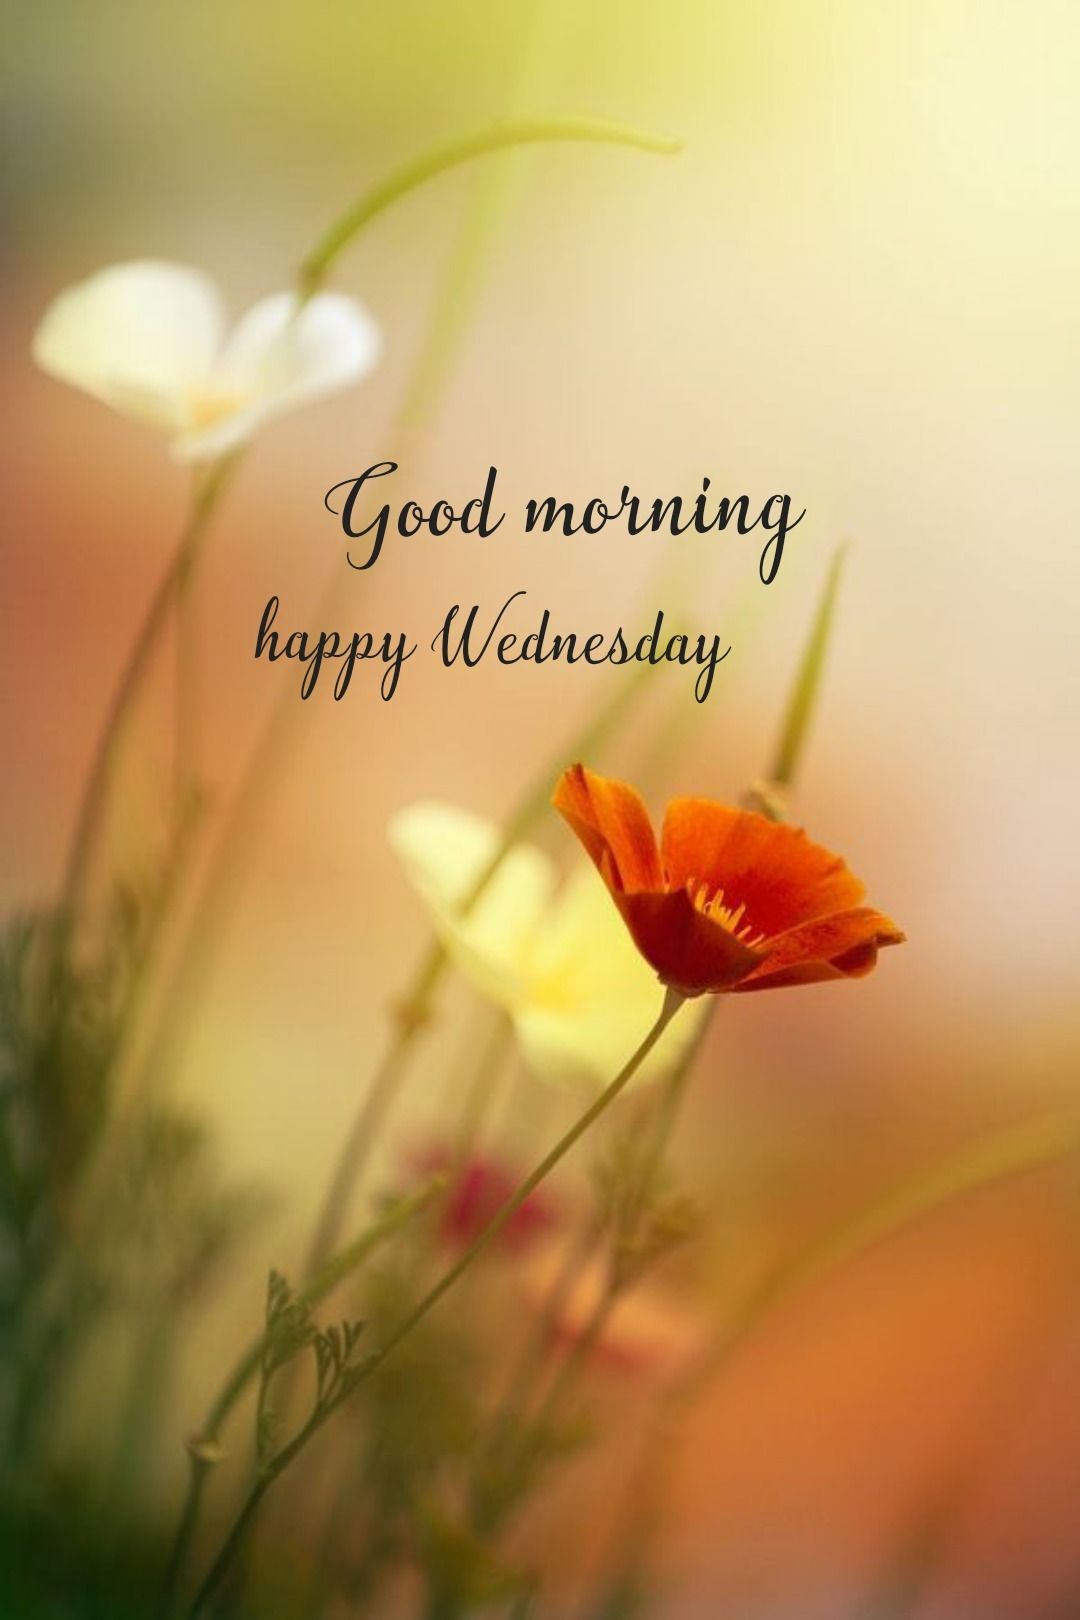 Happy Wednesday# Images • kalyani (@kalyani___) on ShareChat